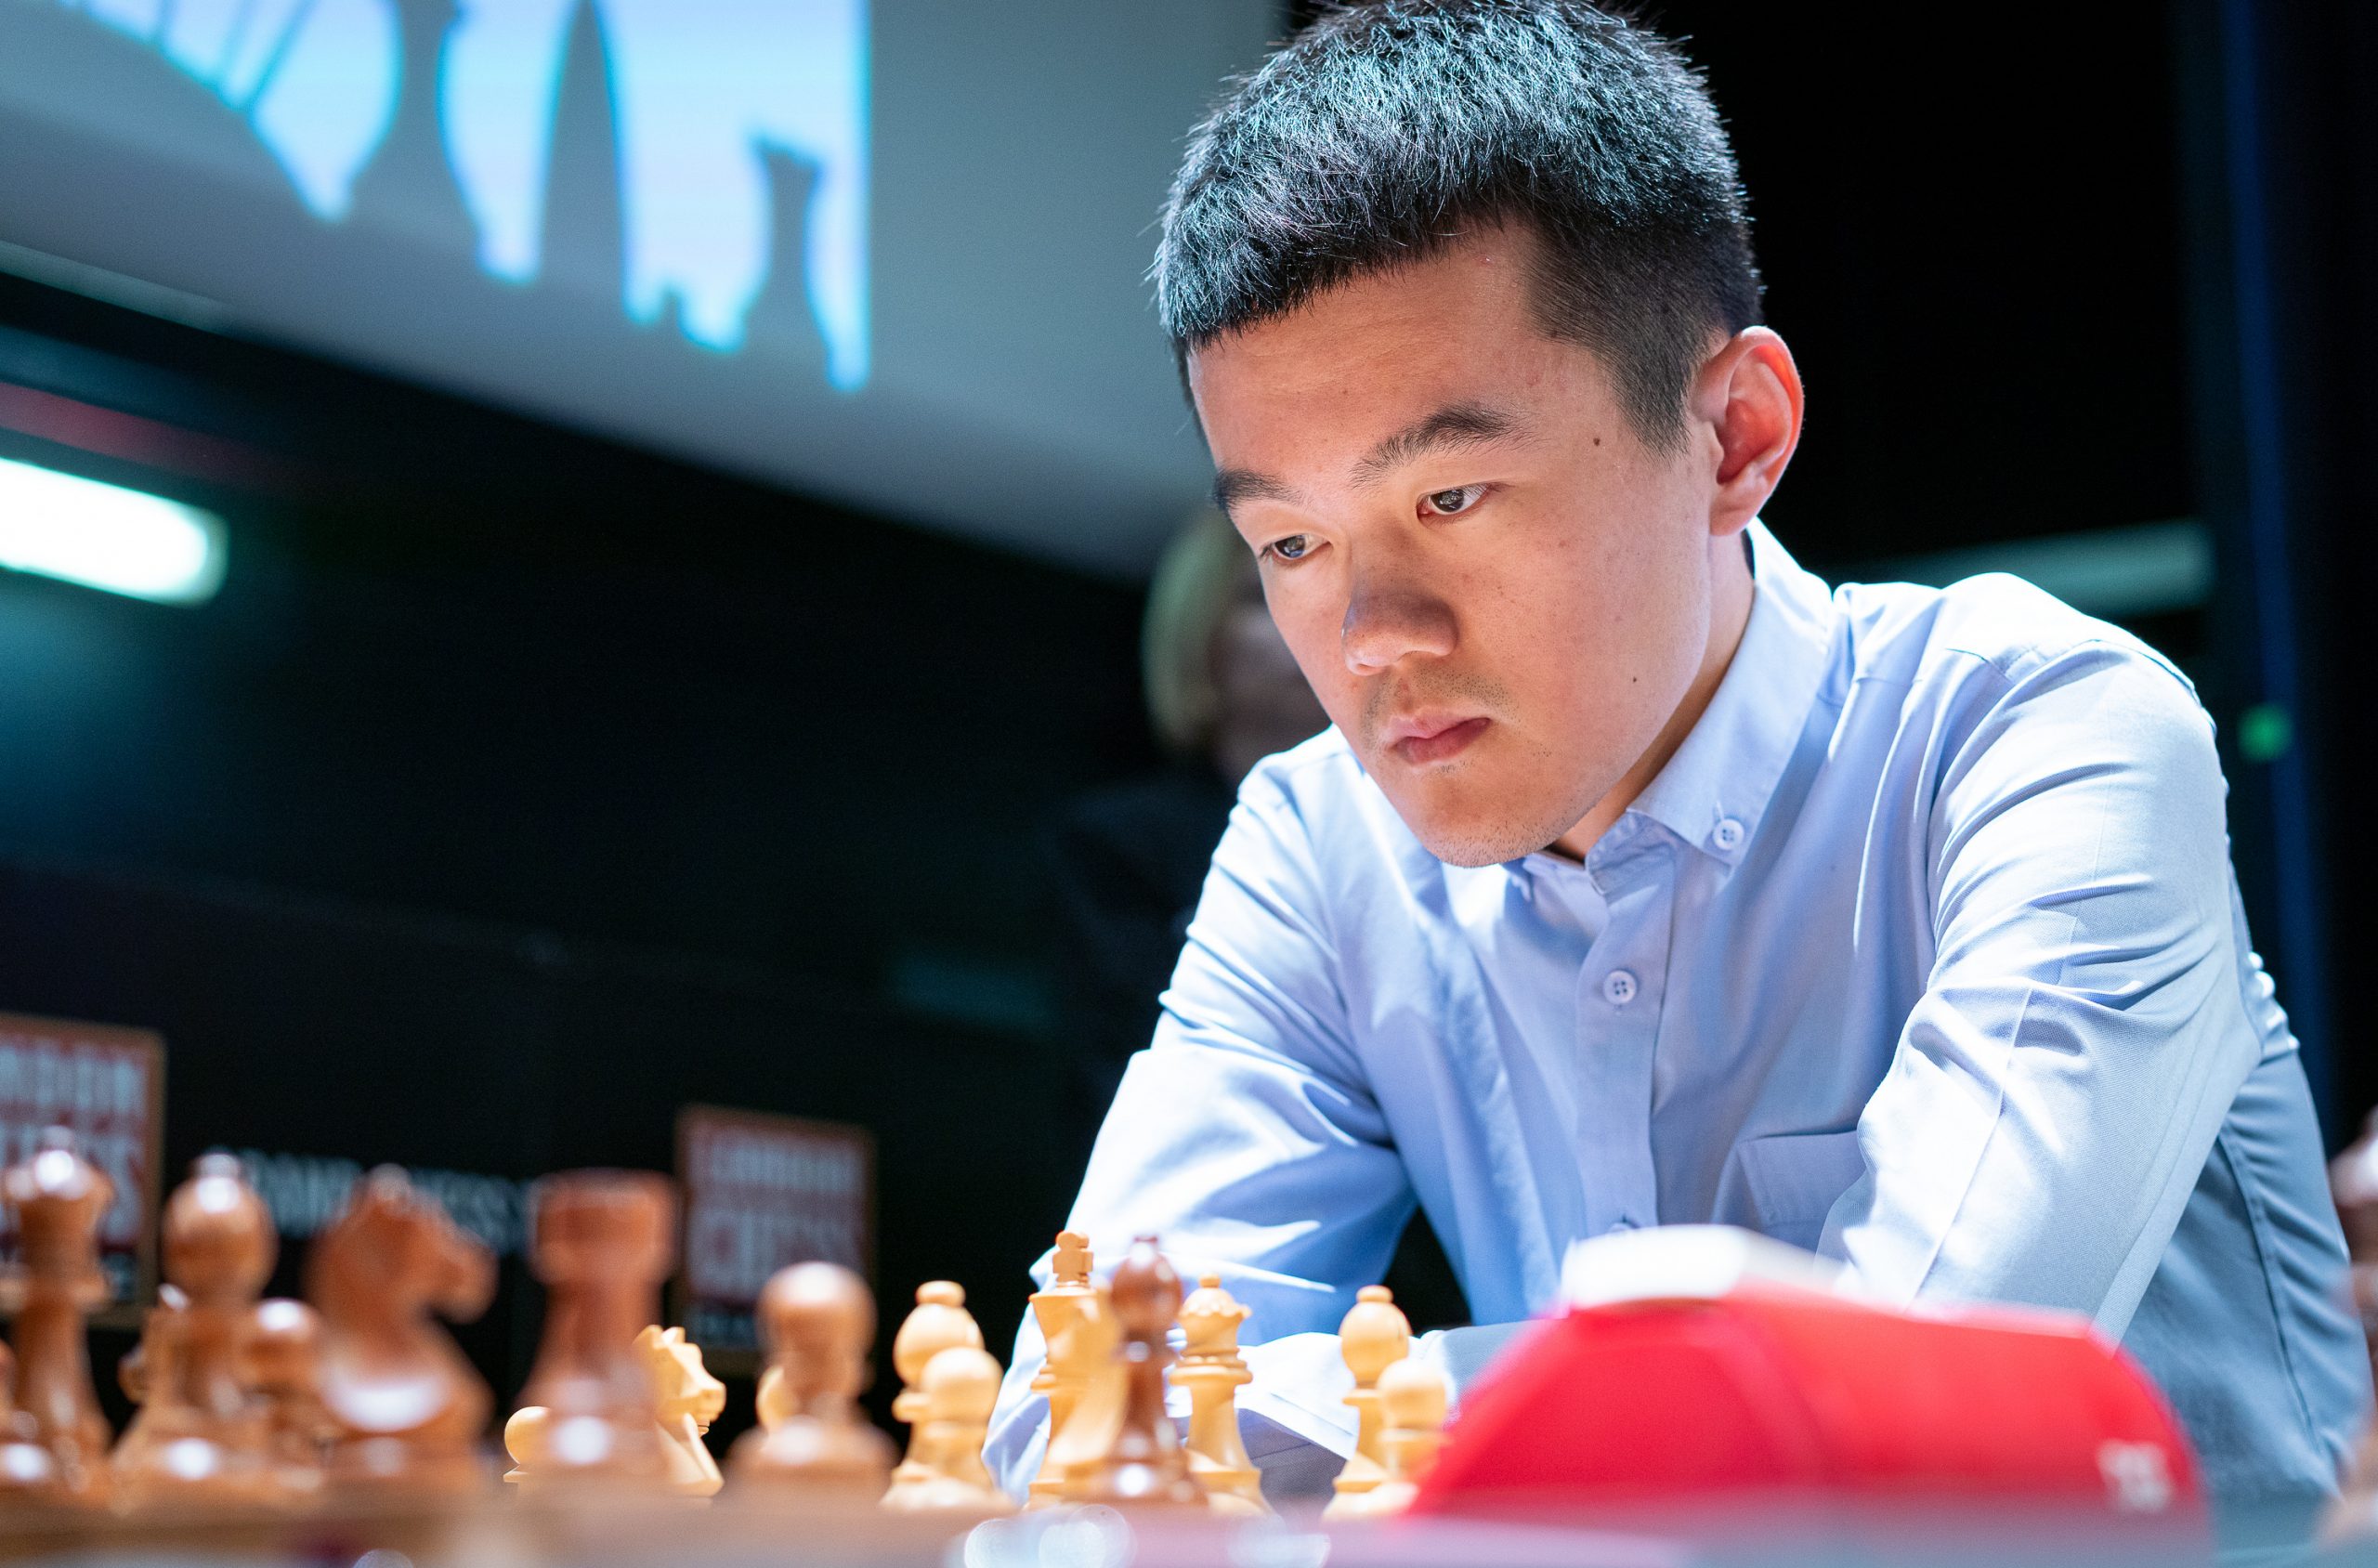 GM Ding Liren  Grand Chess Tour